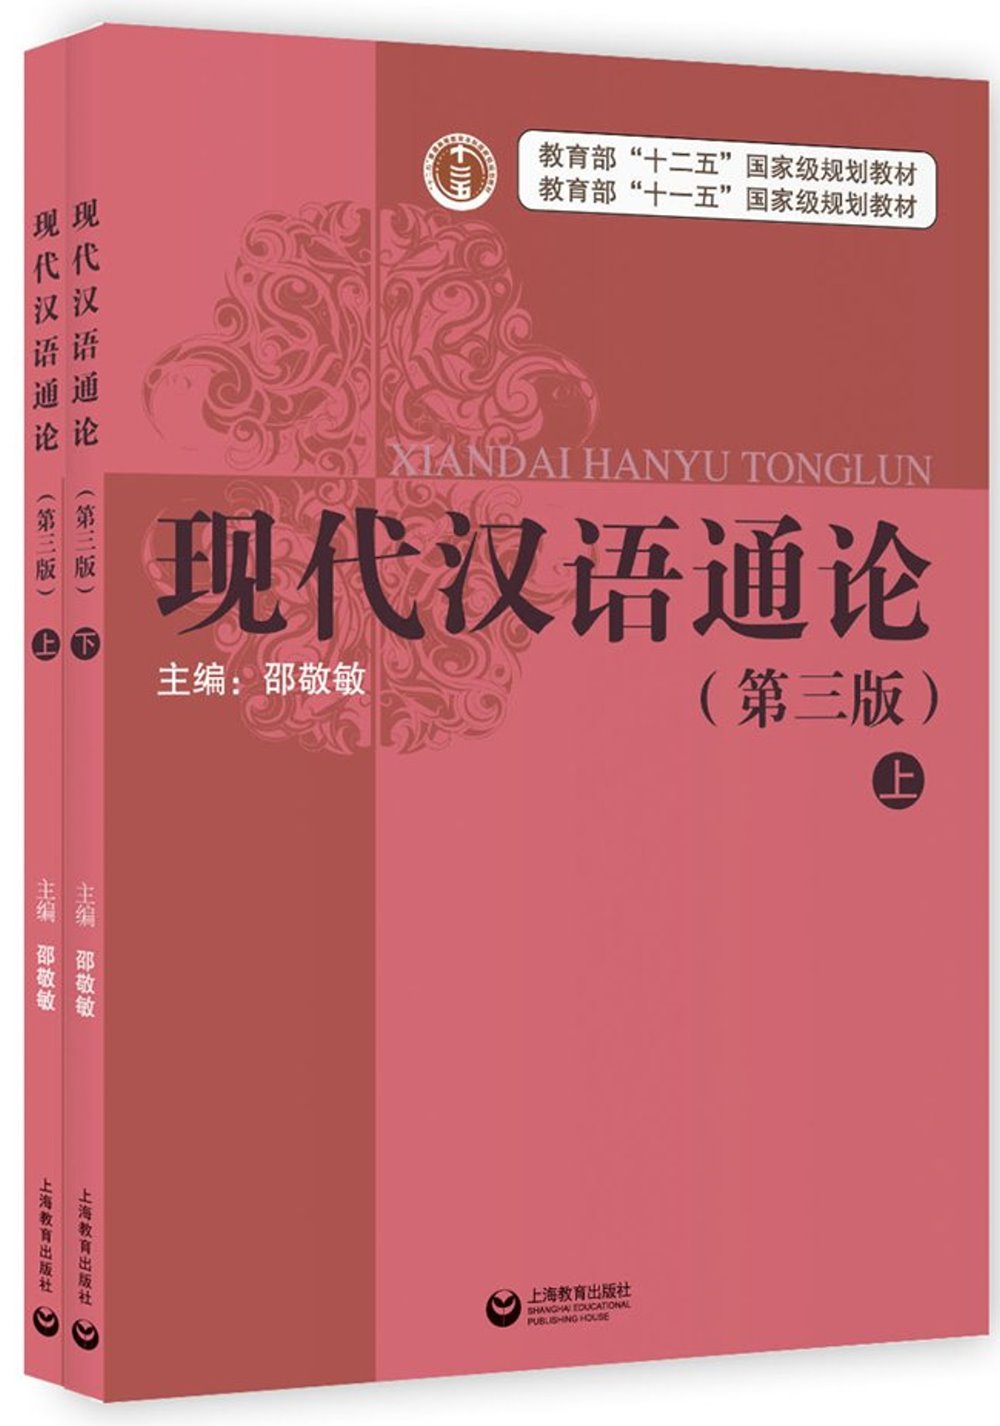 現代漢語通論(第3版)(上下)